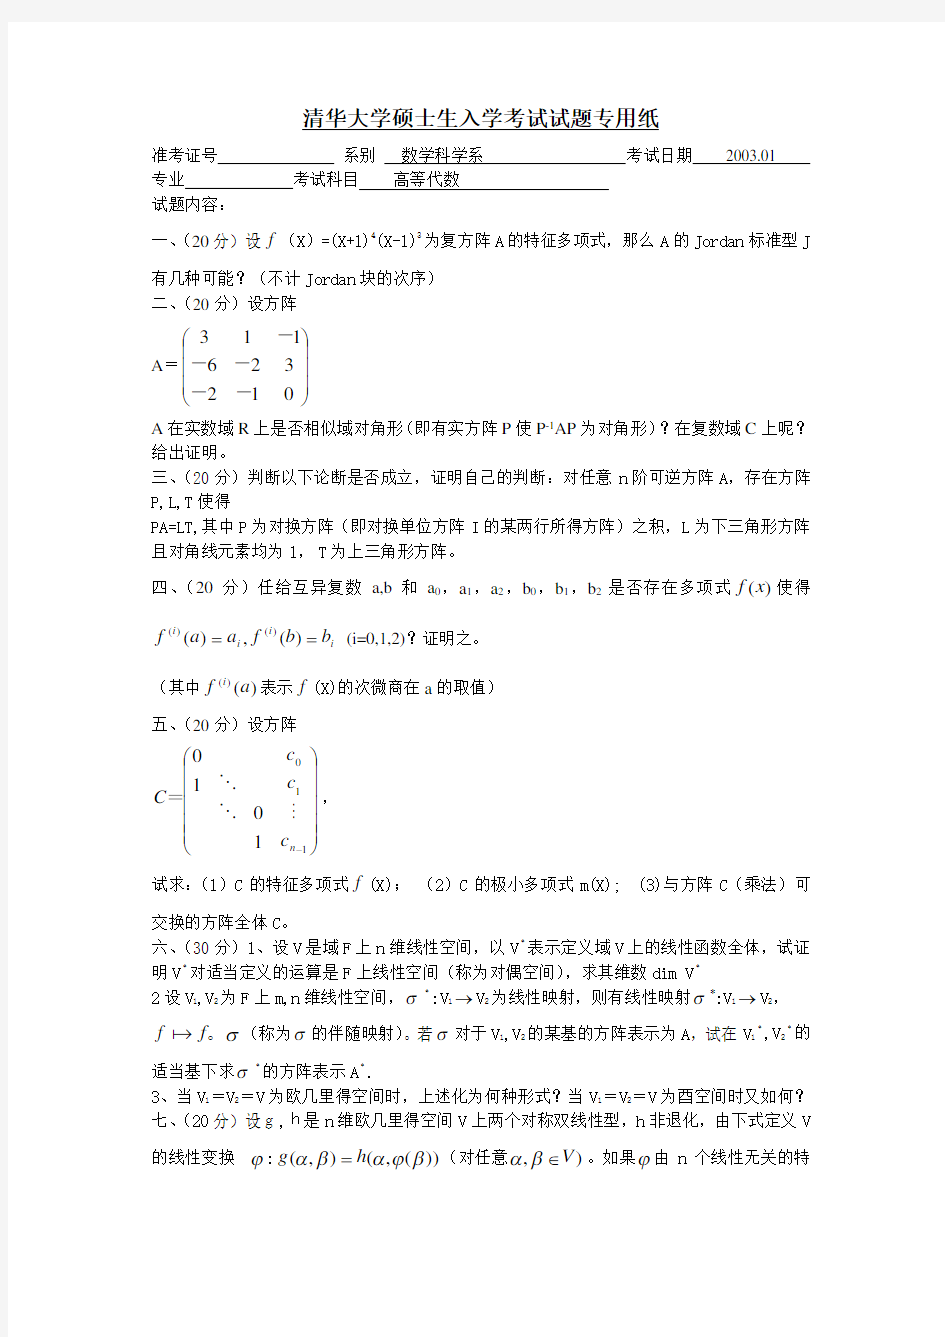 清华大学数学系硕士生入学考试试题